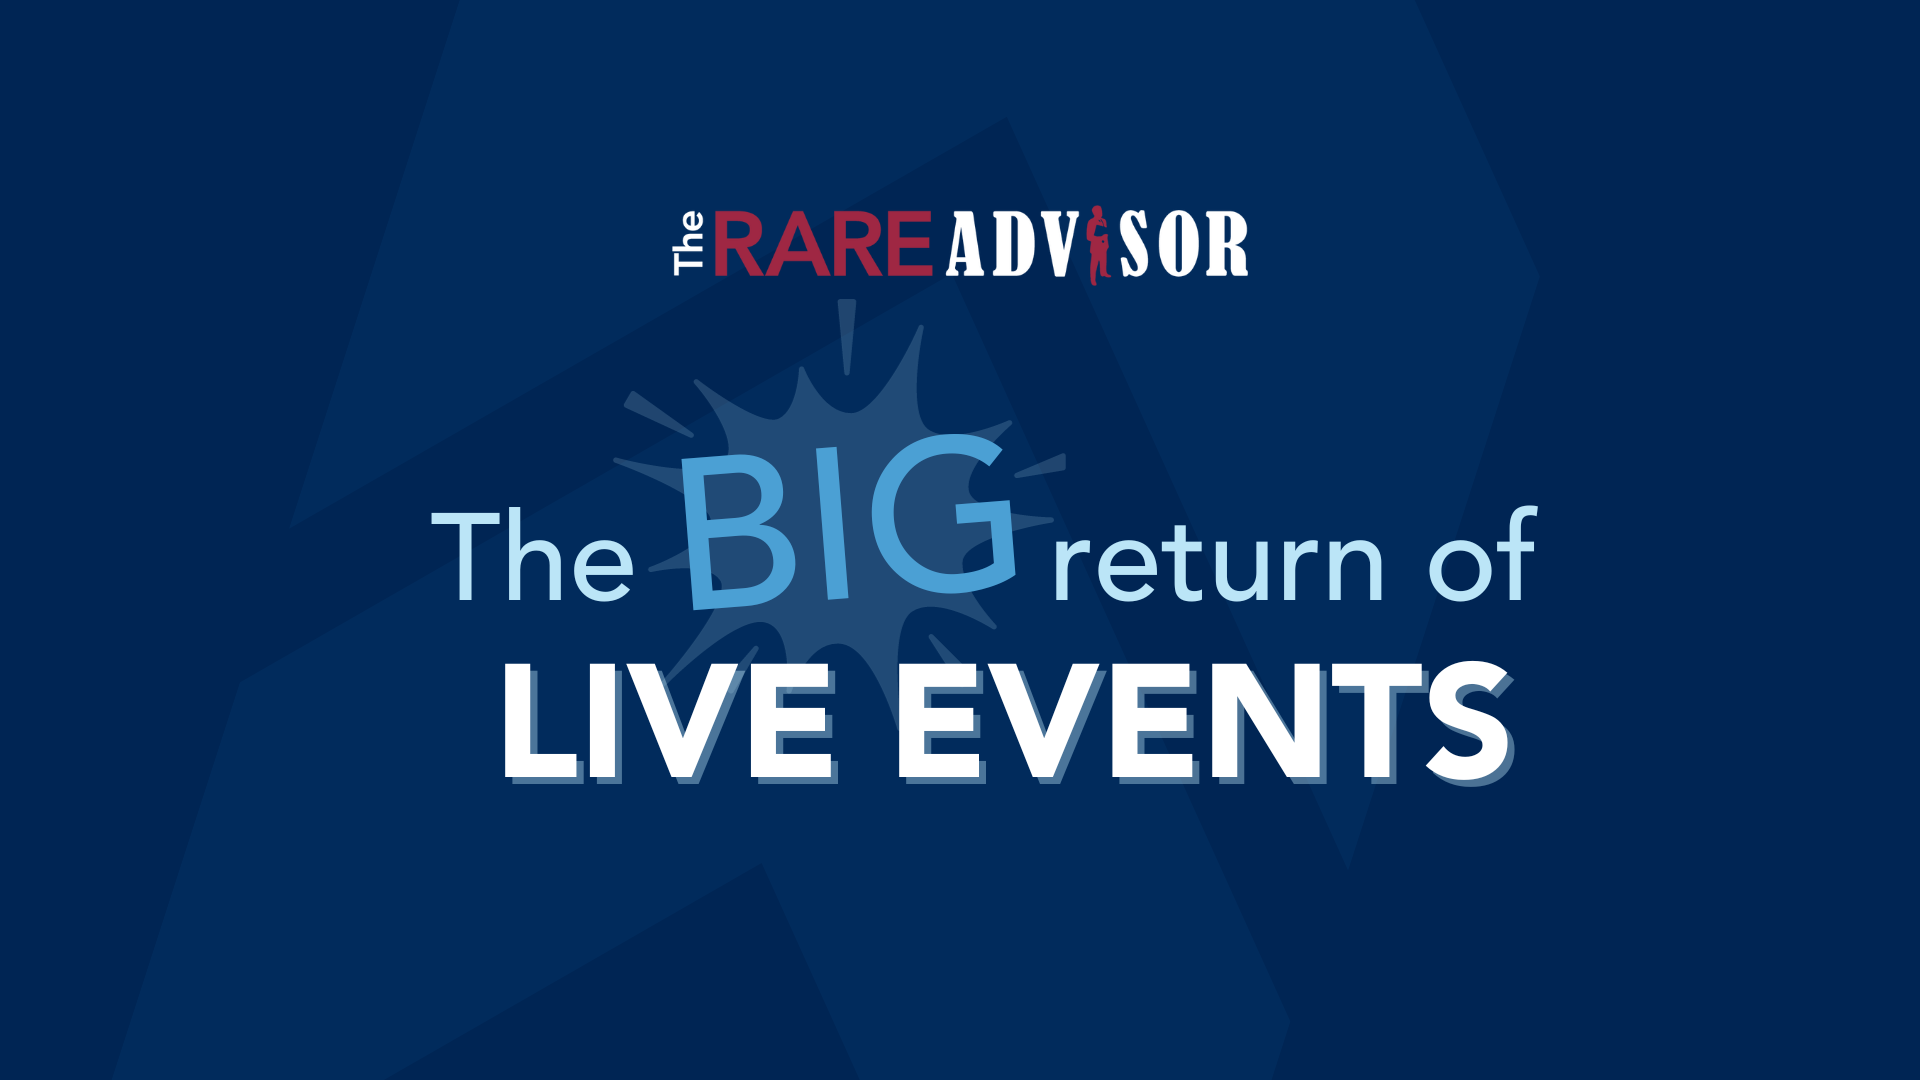 The RARE Advisor: 5 Live Events Big as Ever